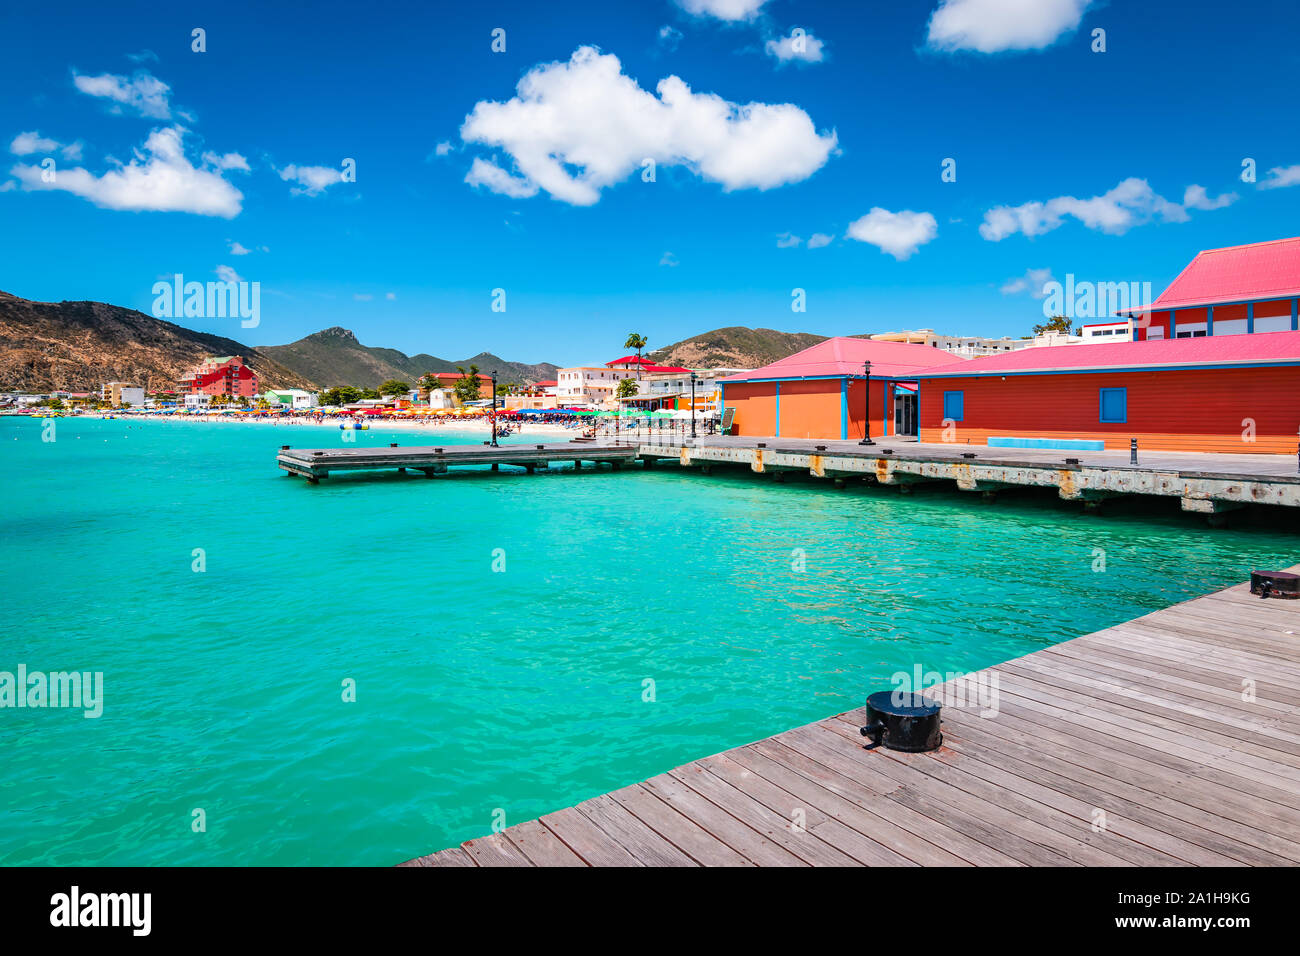 Philipsburg, Saint Martin (Sint Maarten, Saint Martin), des Caraïbes. Dock en bois et bâtiments colorés à Grand Bay Beach. Croisière populaire destination. Banque D'Images